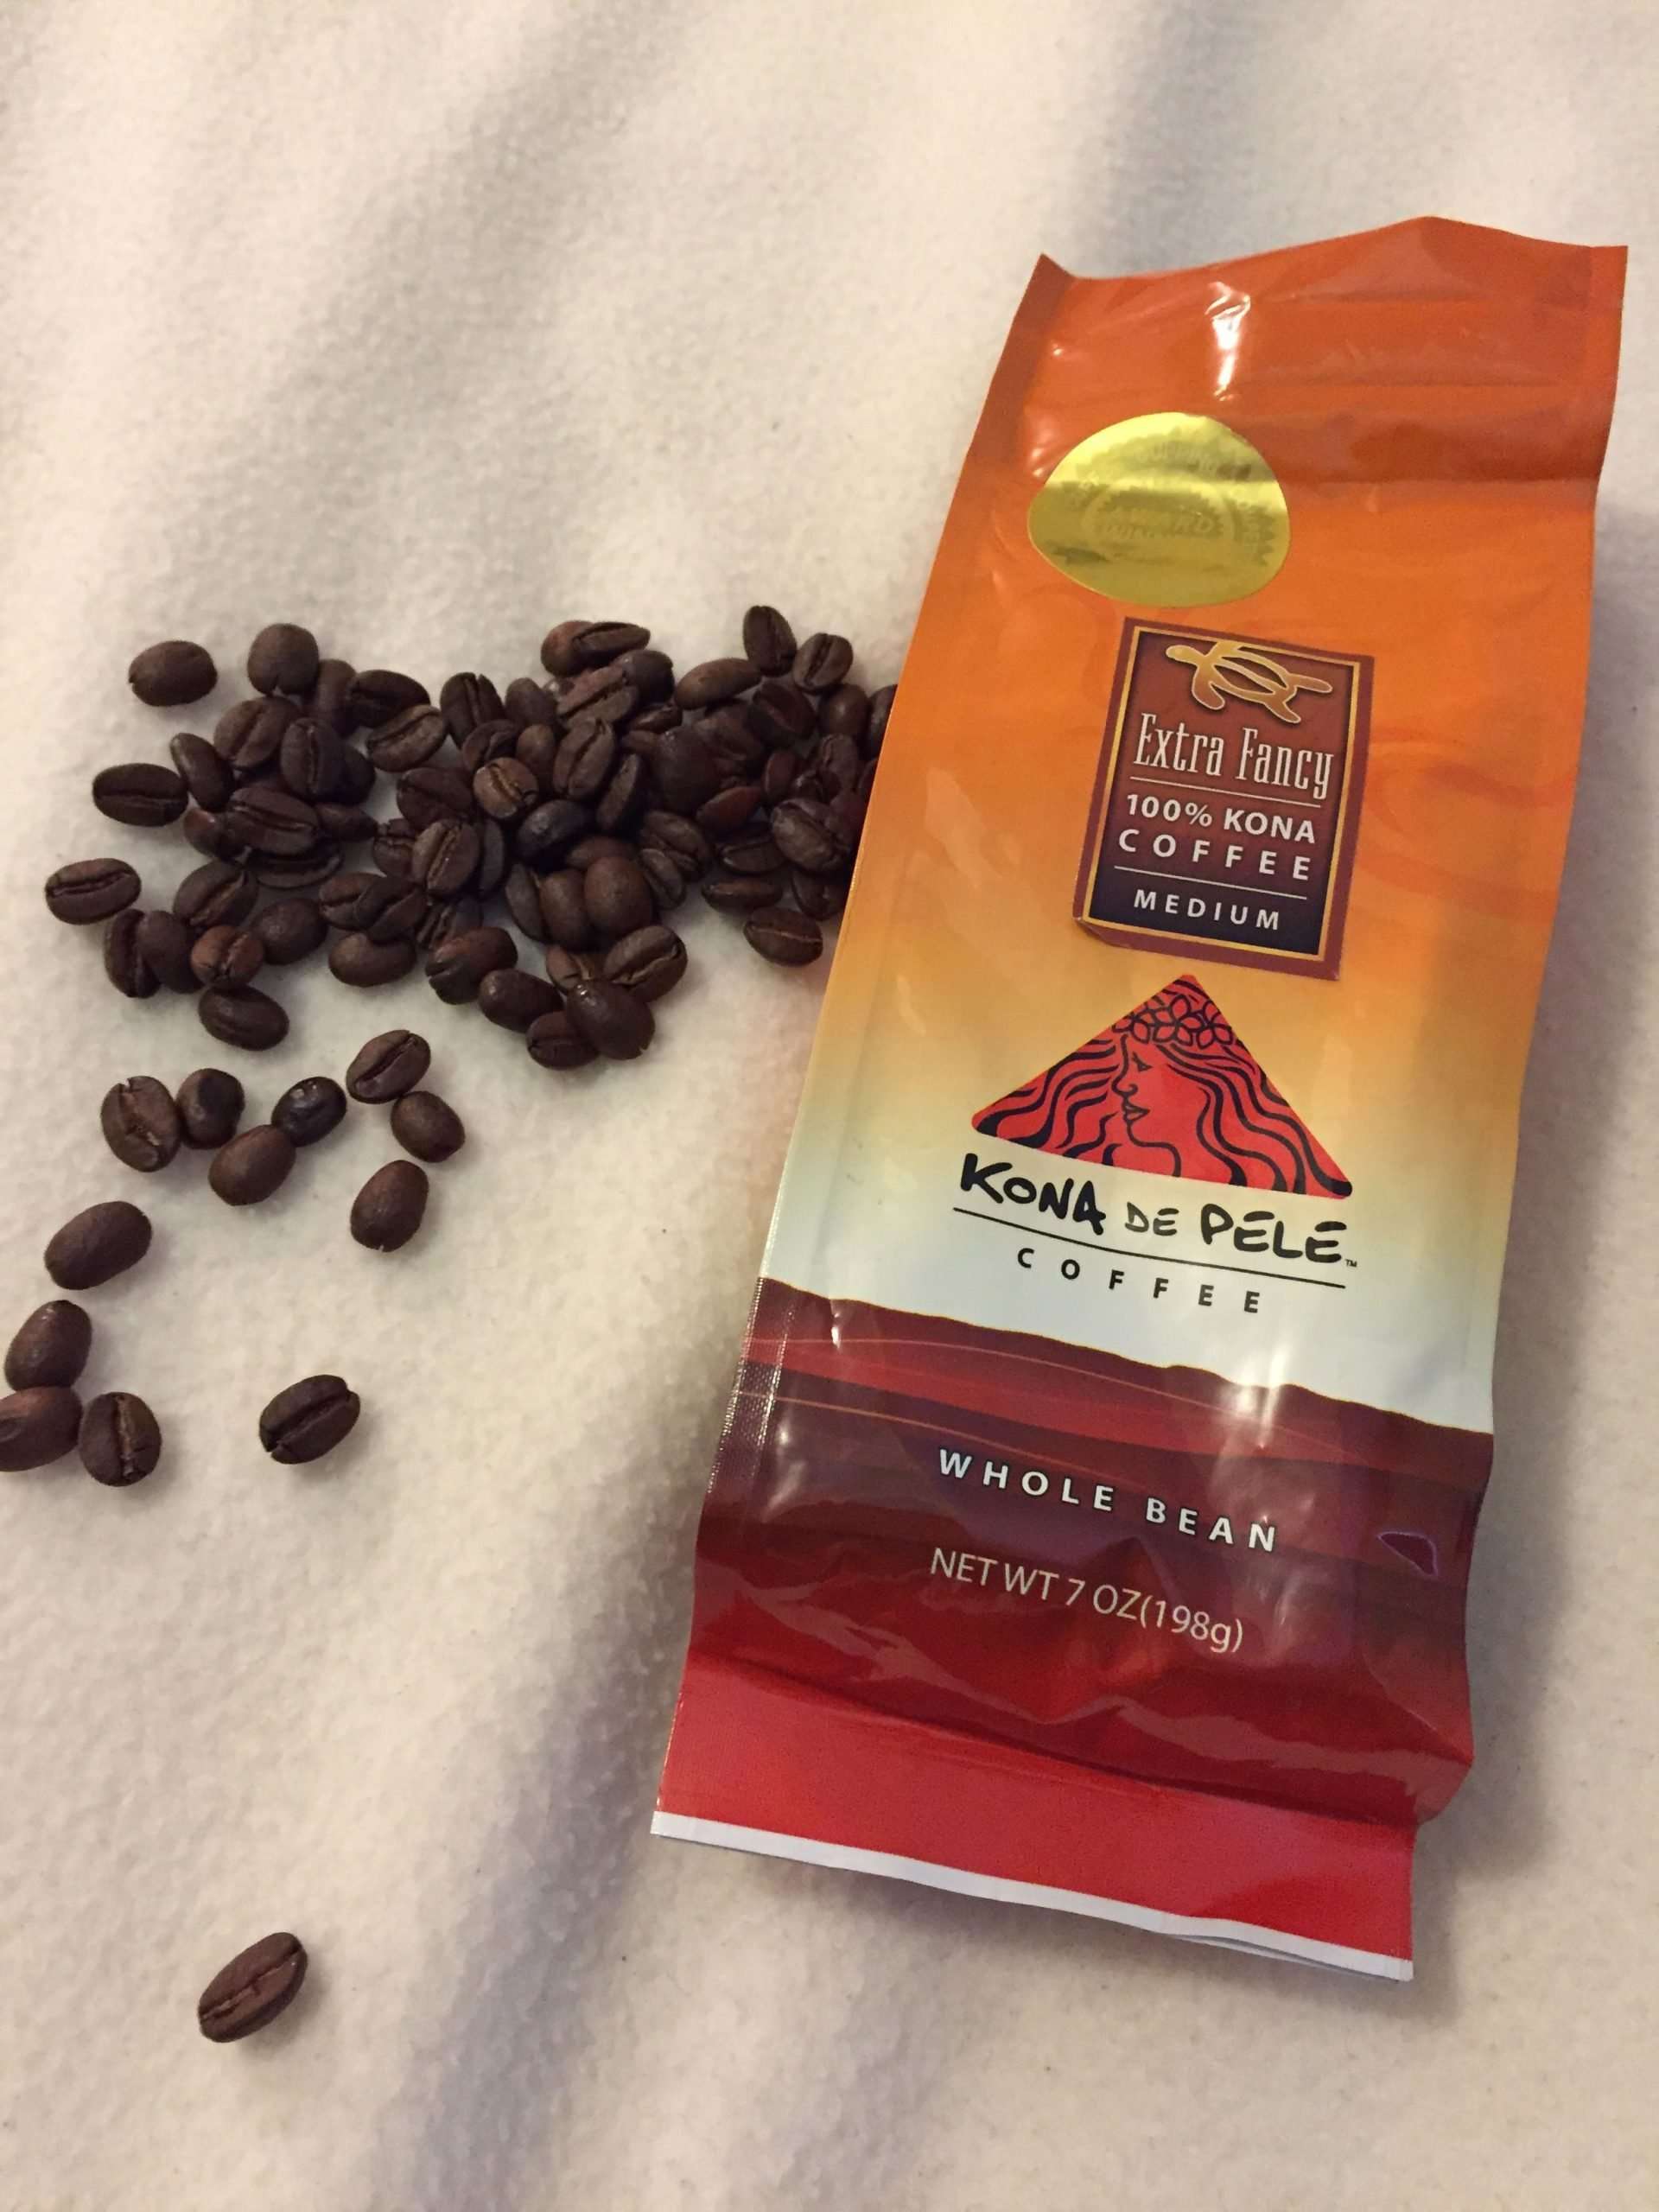 Kona coffee beans from Hawaii